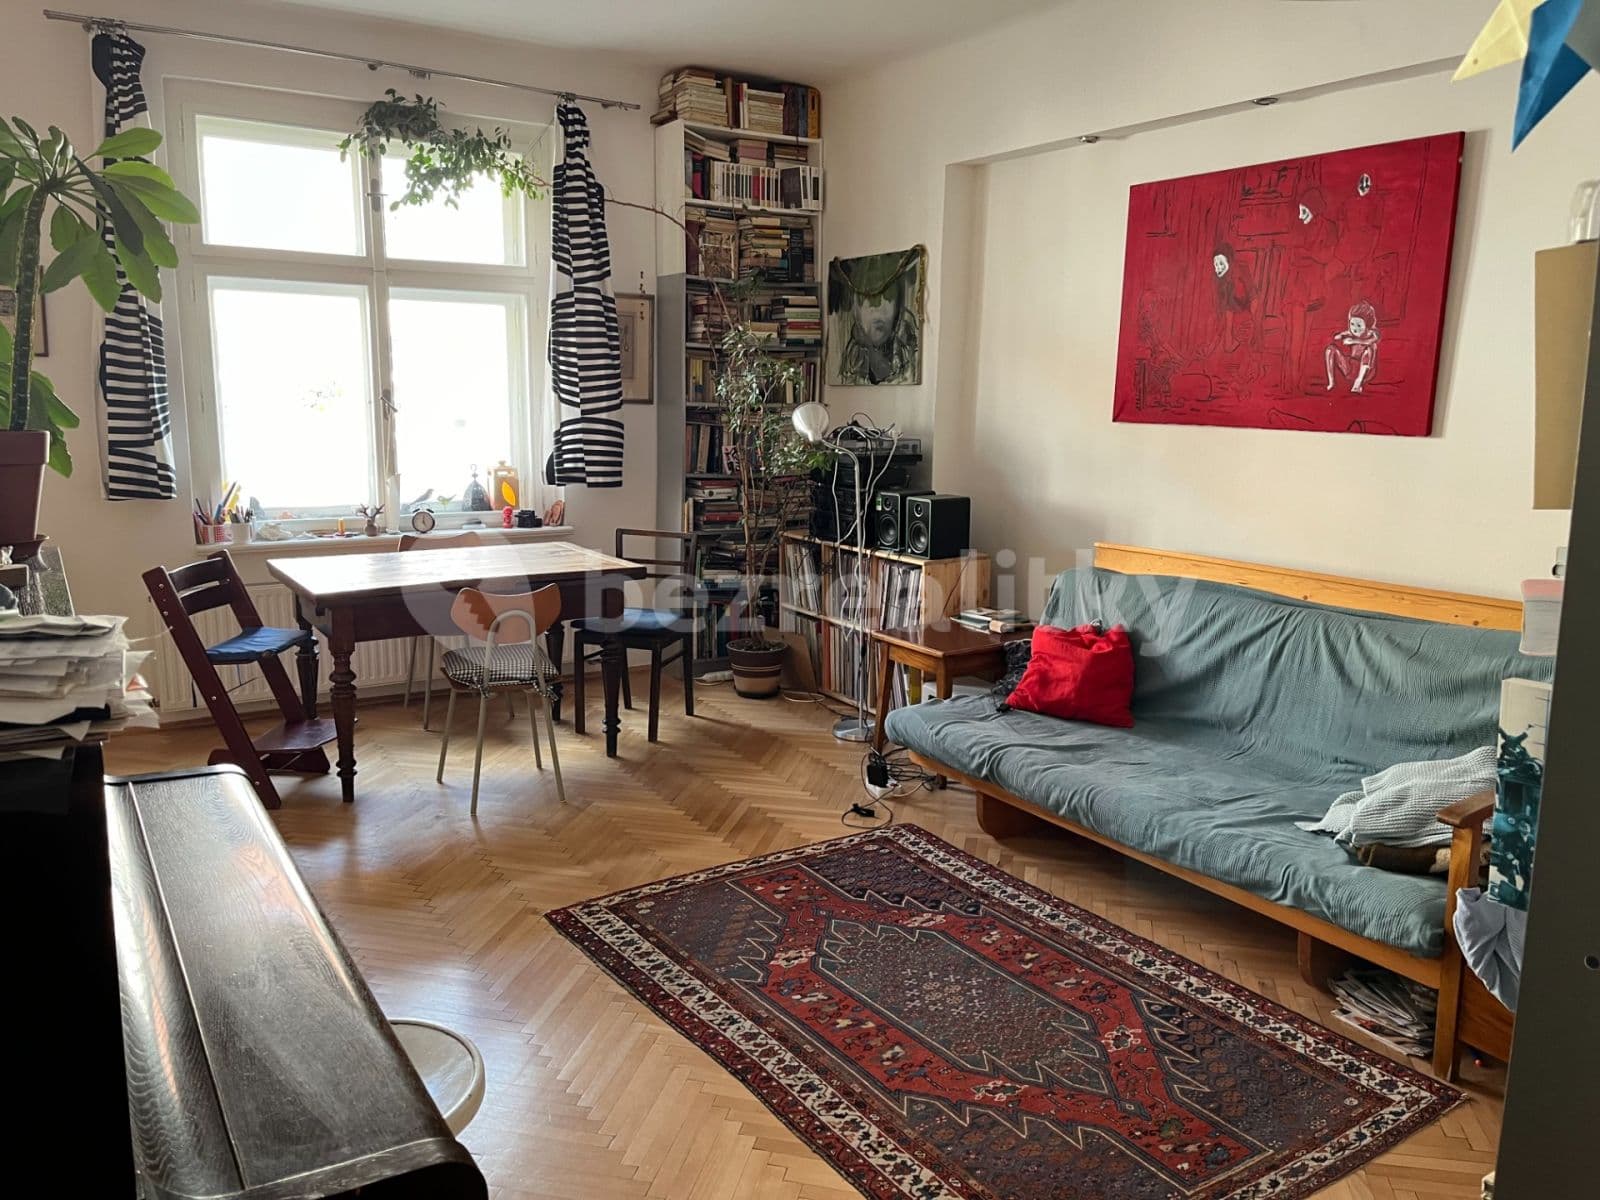 3 bedroom with open-plan kitchen flat to rent, 104 m², Schnirchova, Prague, Prague